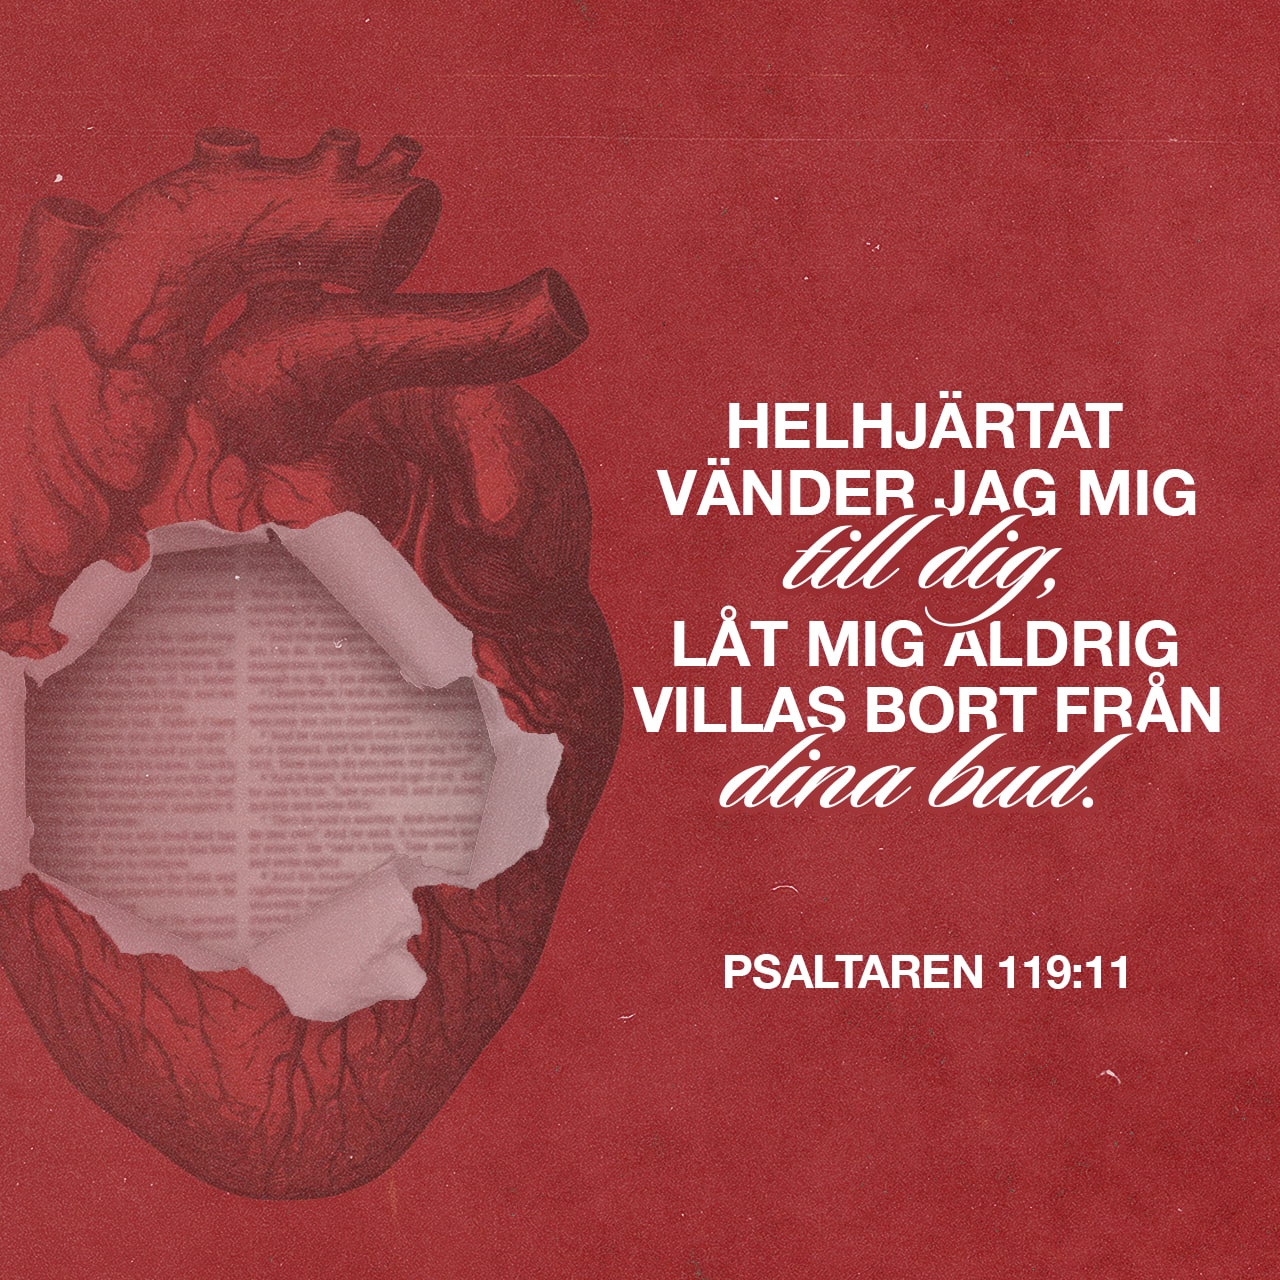 Psaltaren 119:11 - Vad du har sagt bevarar jag i mitt hjärta,
så att jag aldrig syndar mot dig.